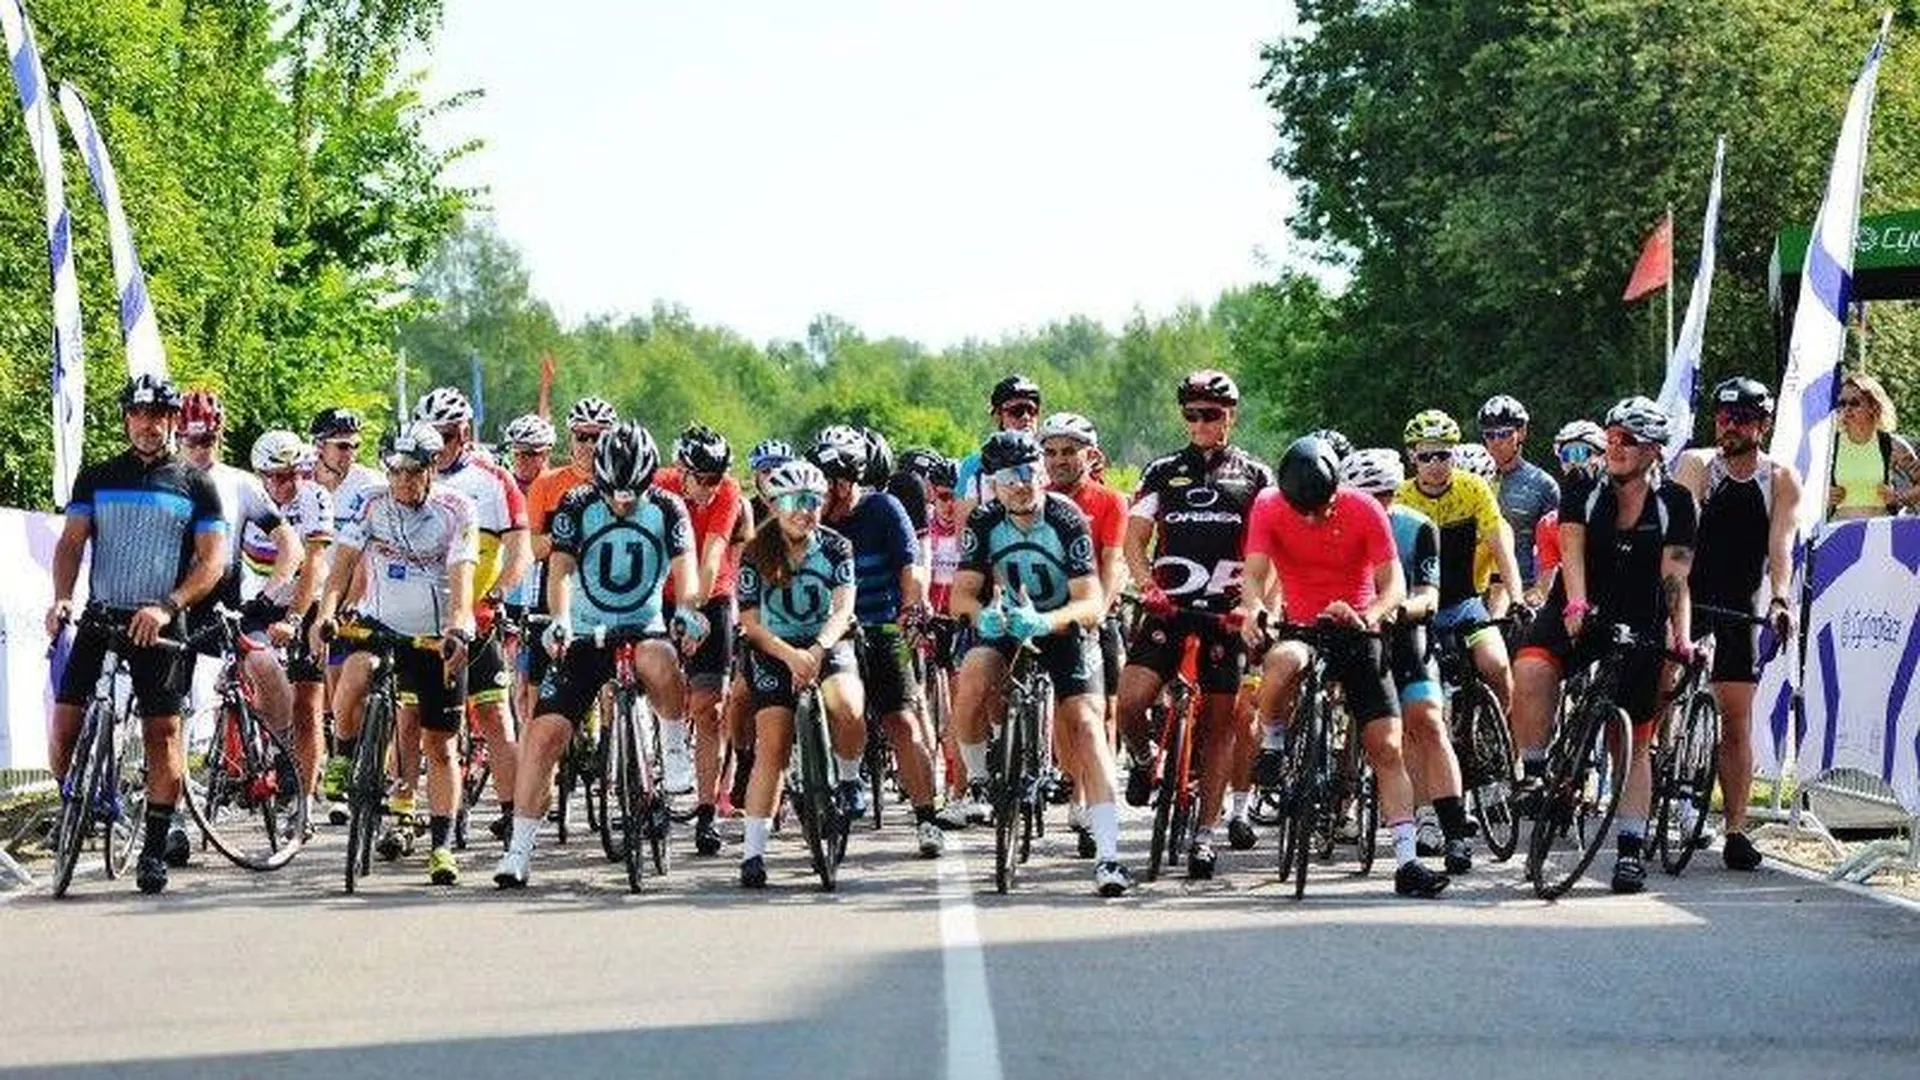 Двухдневная велогонка Cyclingrace прошла в подмосковном Краснозаводске Сергиево-Посадского округа